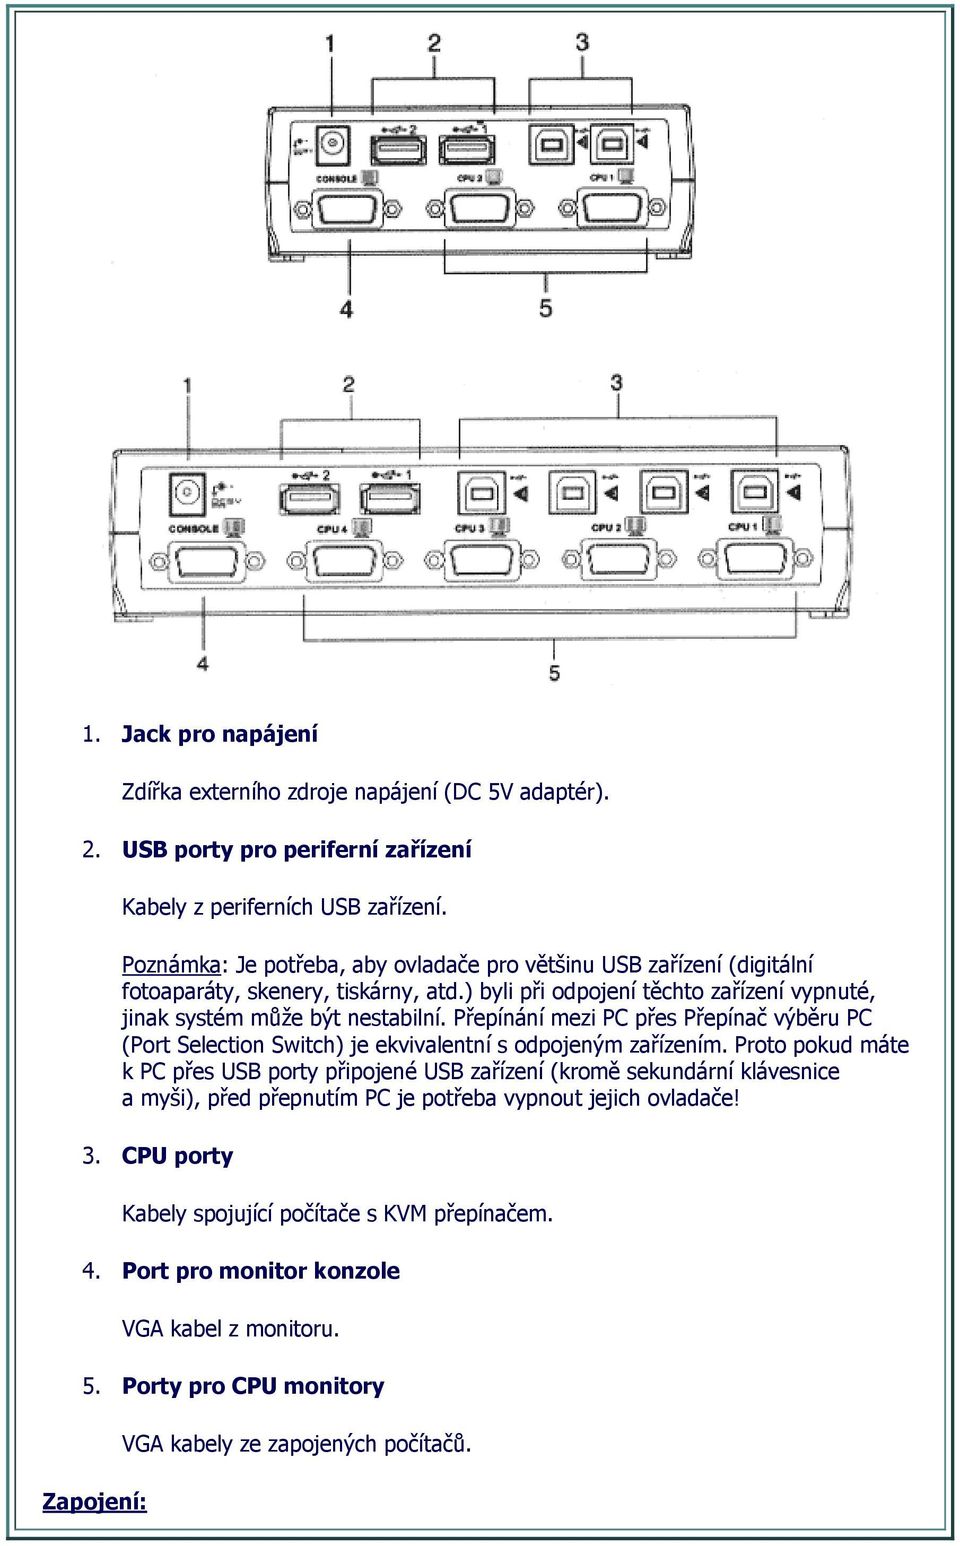 Přepínání mezi PC přes Přepínač výběru PC (Port Selection Switch) je ekvivalentní s odpojeným zařízením.